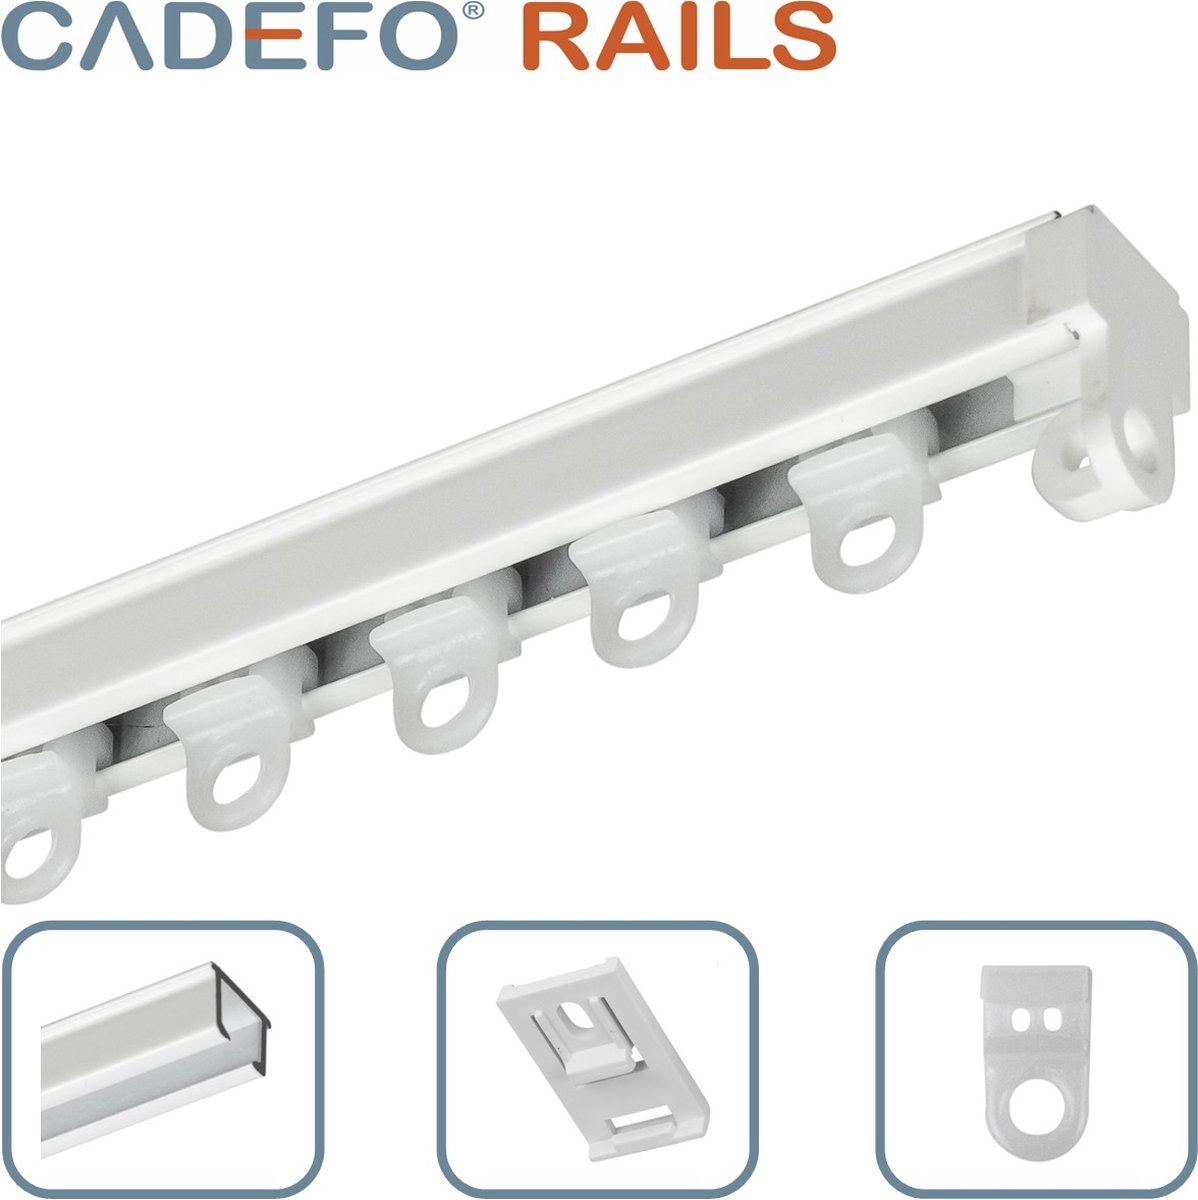 CADEFO RAILS (301 - 350 cm) Gordijnrails - Compleet op maat! - UIT 1 STUK - Leverbaar tot 6 meter - Plafondbevestiging - Lengte 337 cm